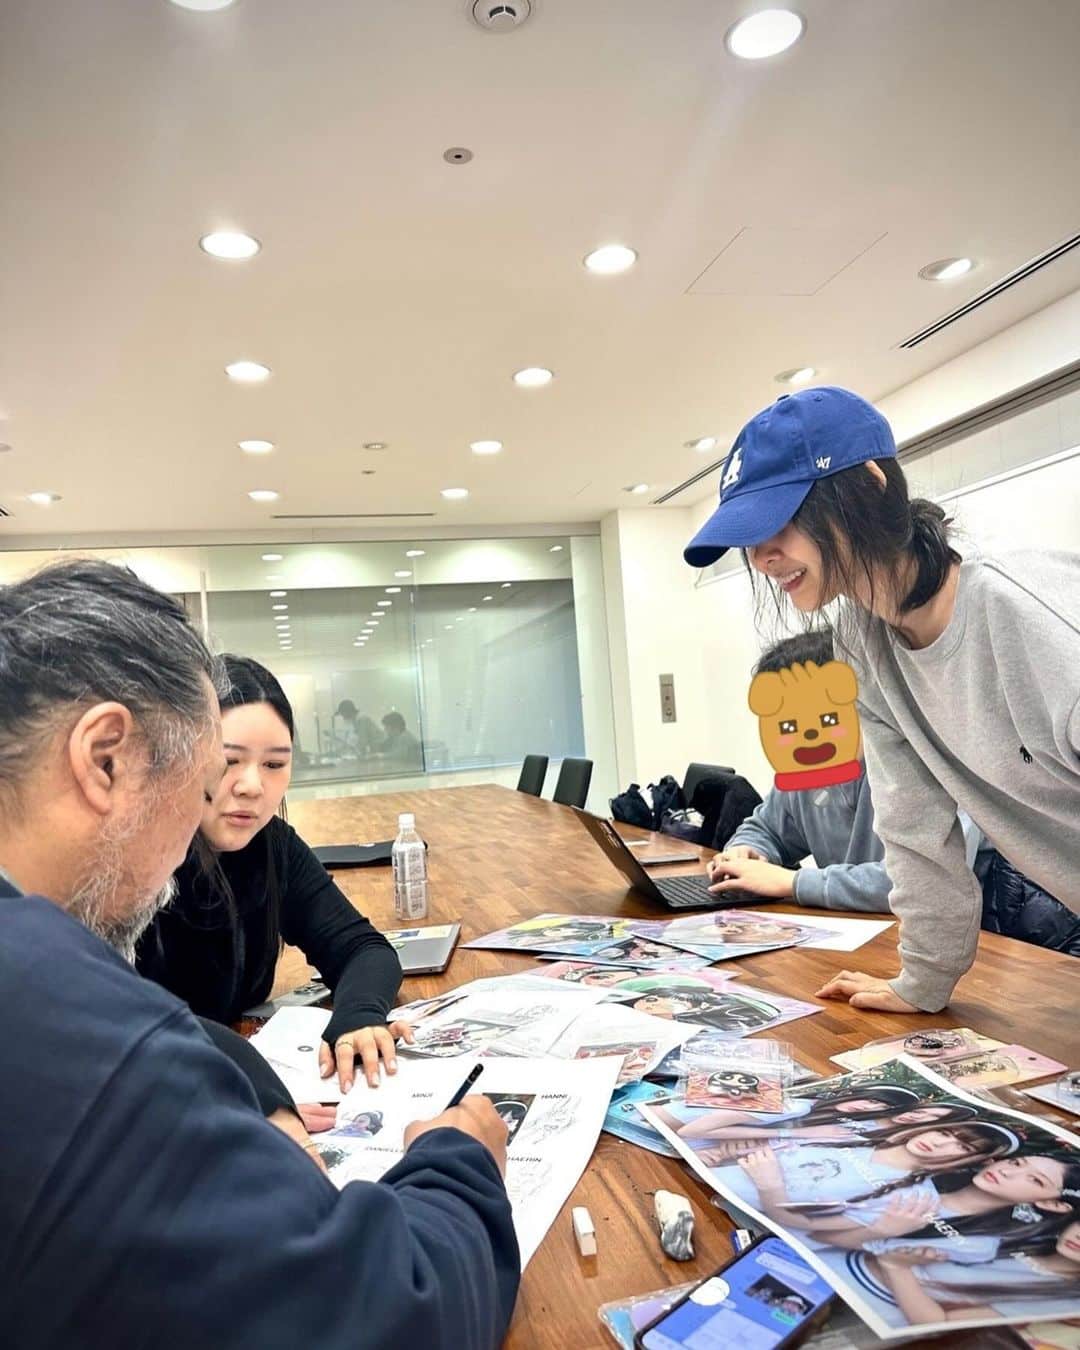 Мин Хи Джин получила трогательный рисунок персонажа от художника Такаши Мураками